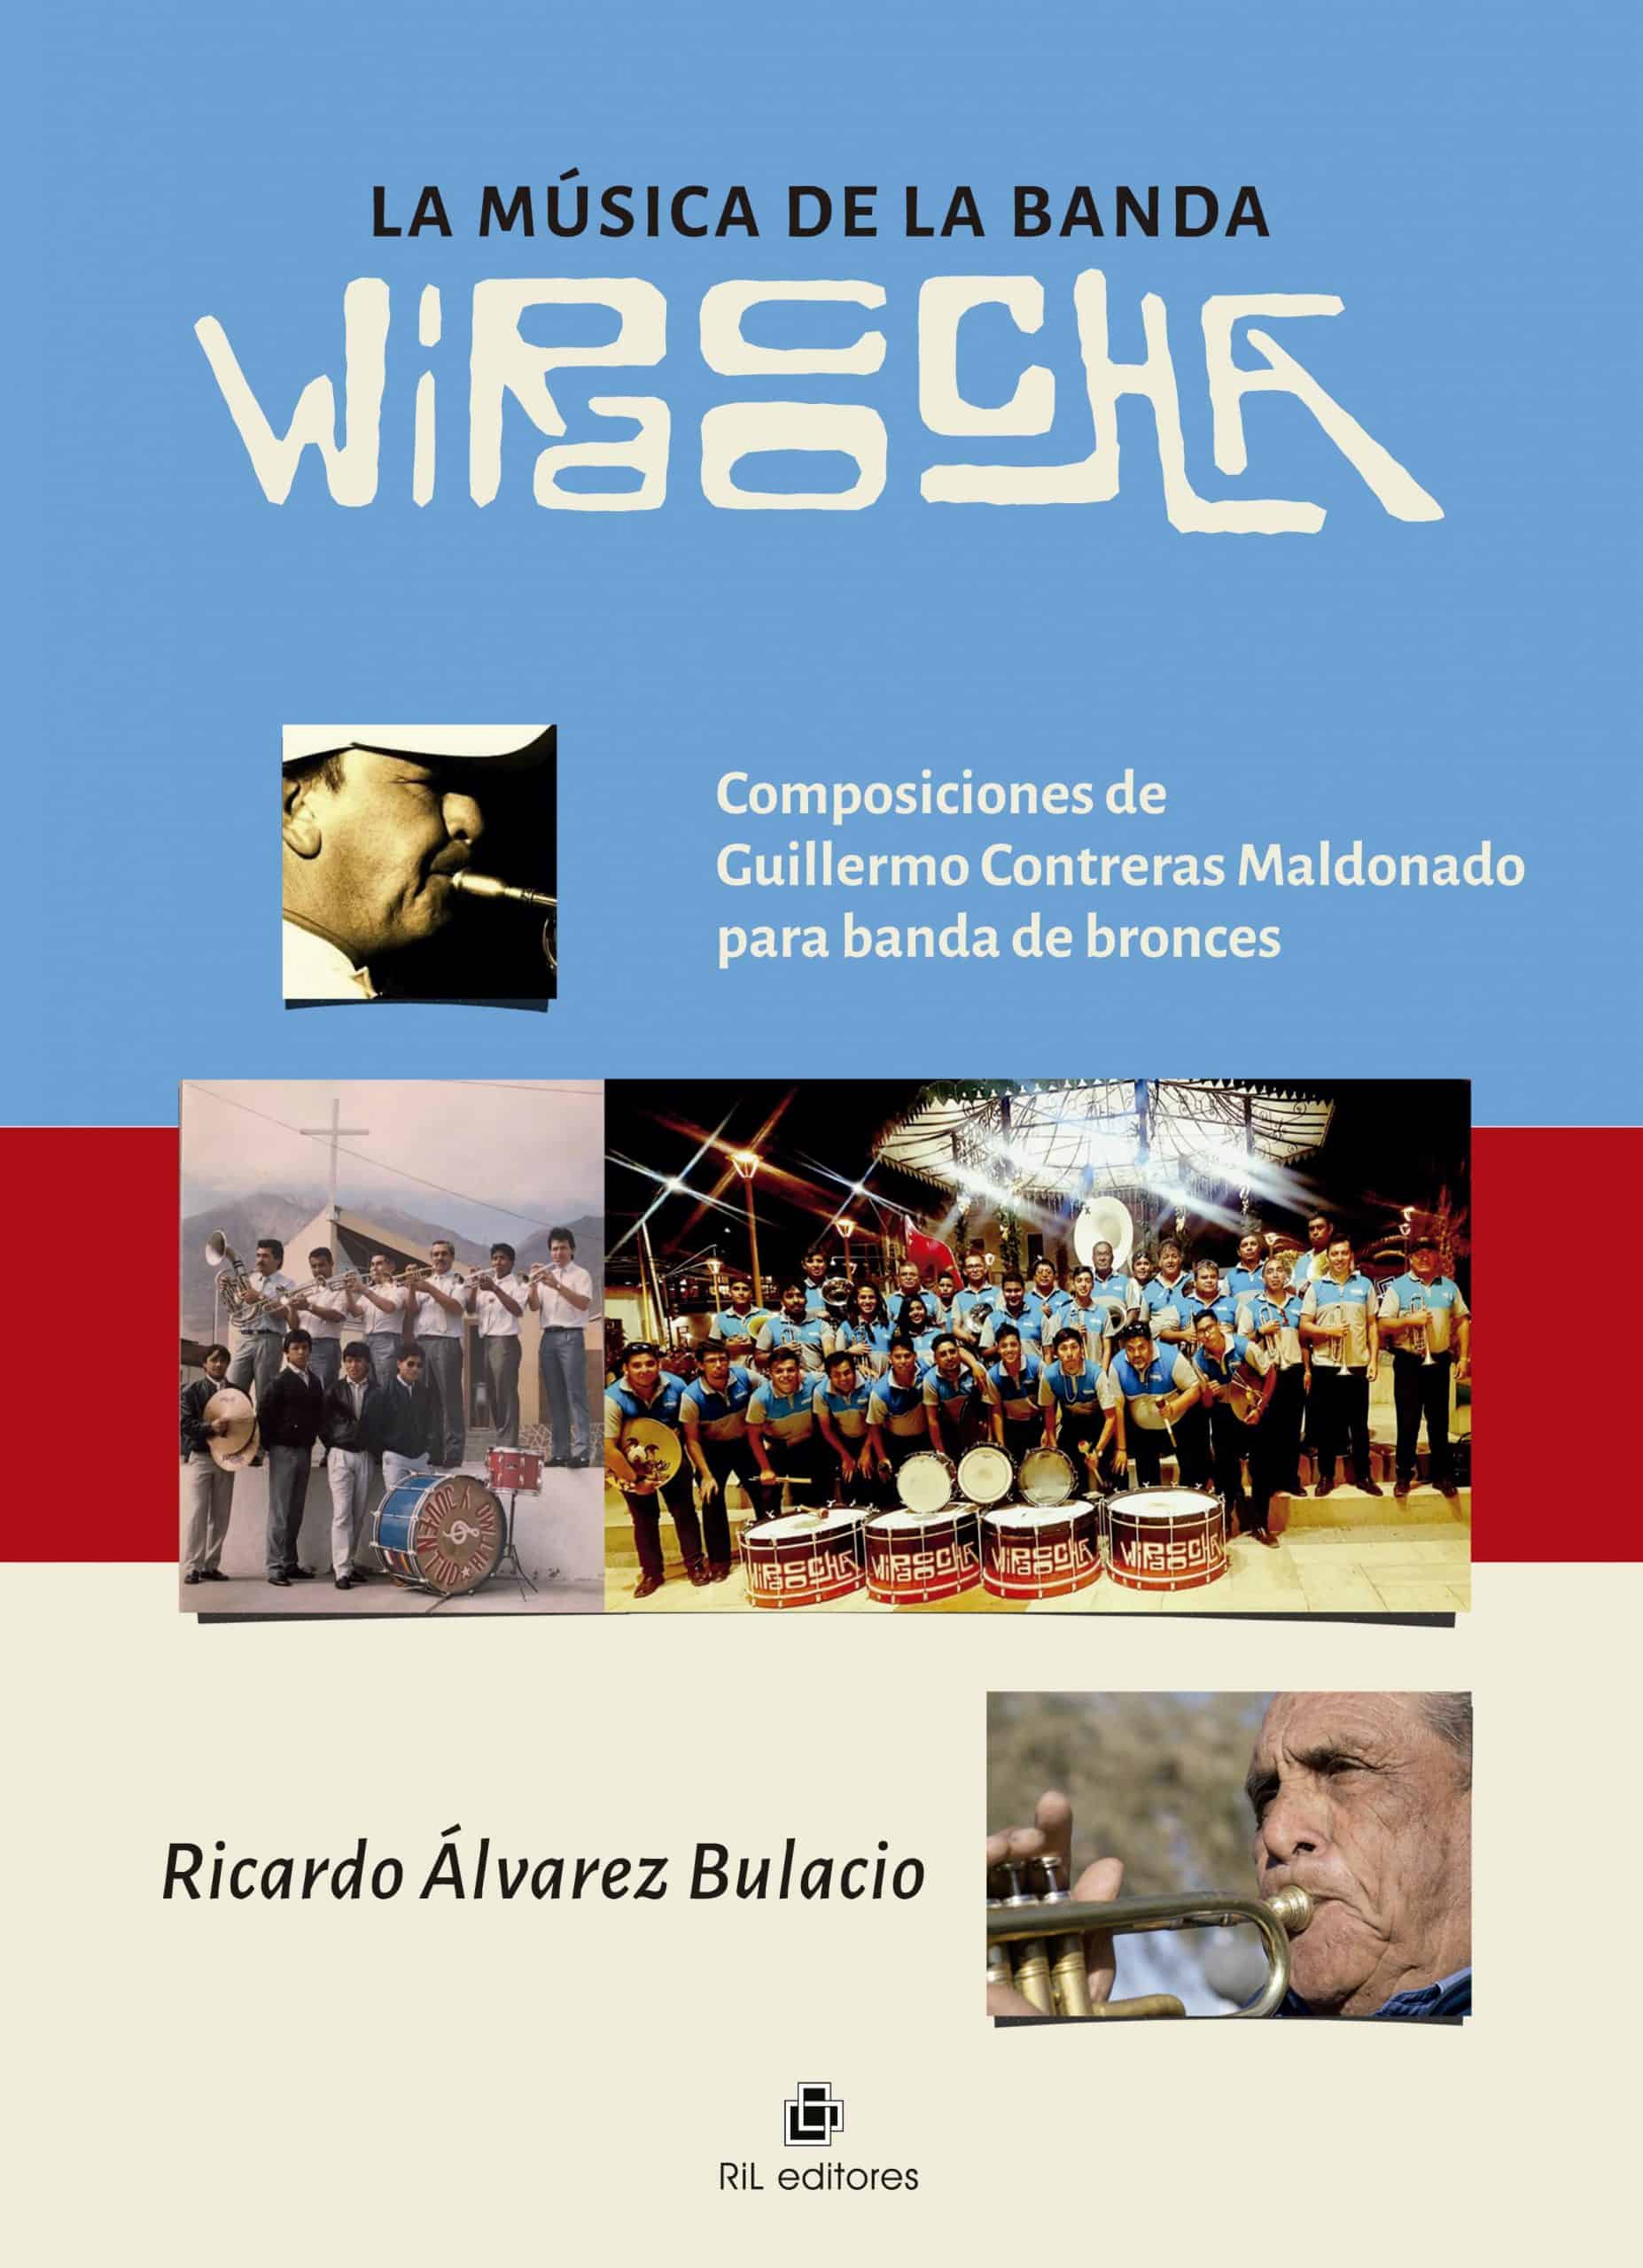 La música de la Banda Wiracocha. Composiciones de Guillermo Contreras Maldonado para banda de bronces 1